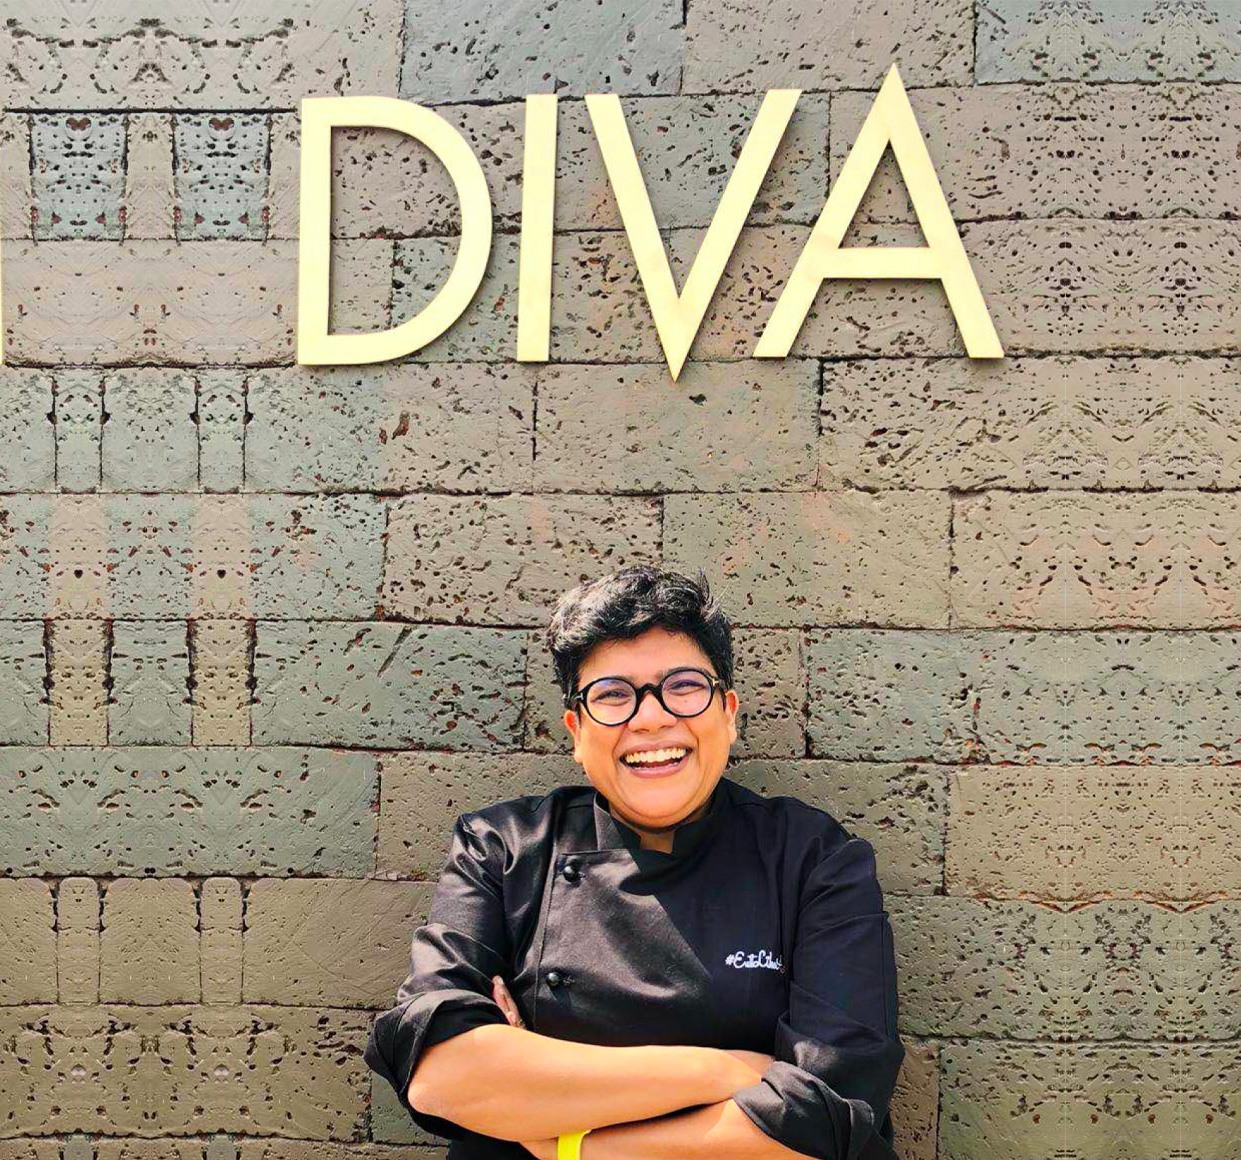 Chef Ritu Dalmia